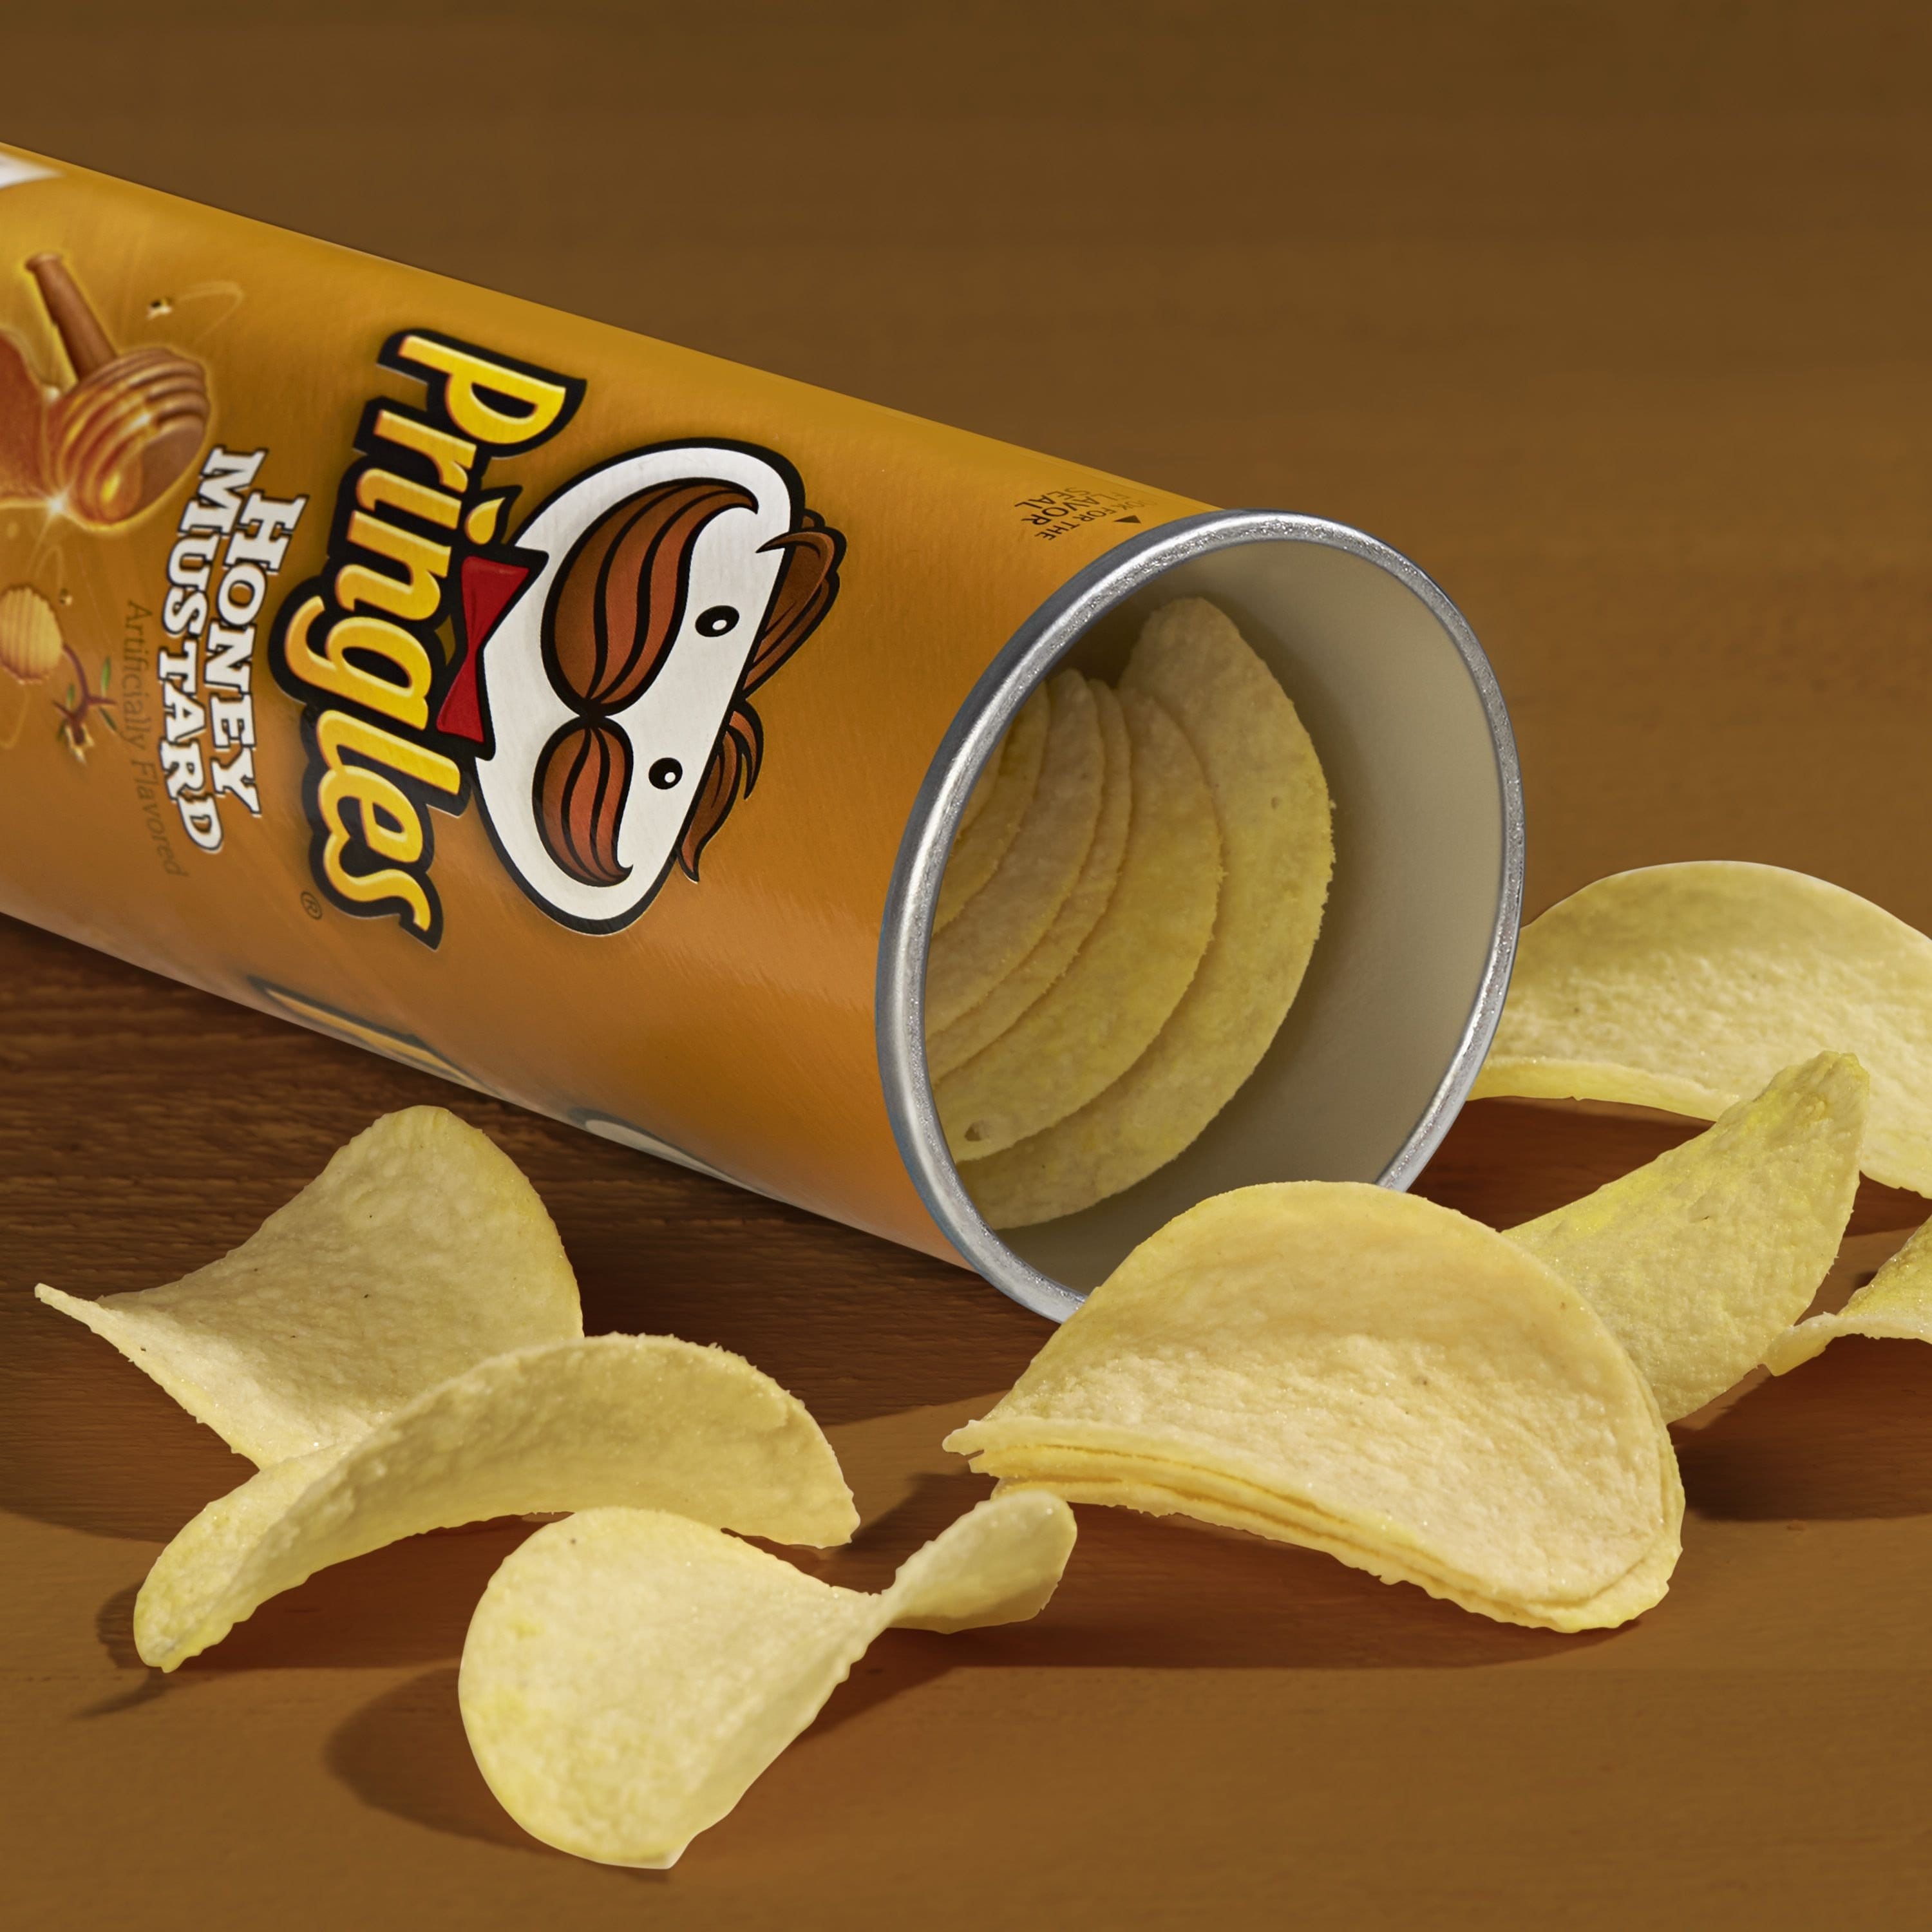 Un paquet en forme de cylindre brun clair ouvert, avec des chips jaunes qui sortent. Le tout sur une table brune